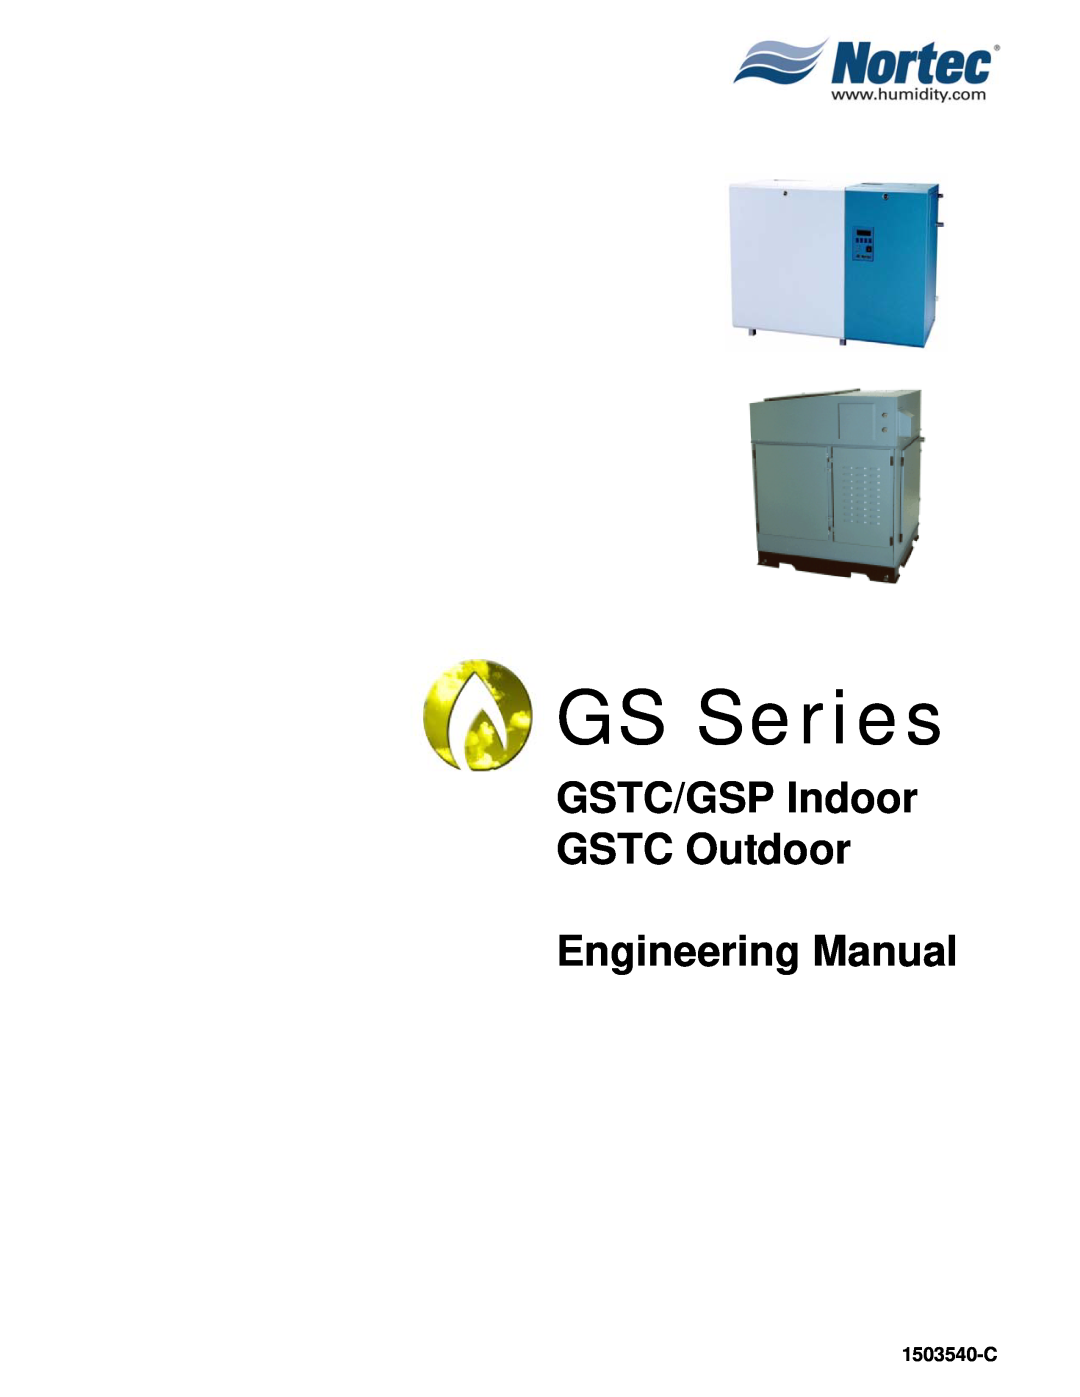 Nortec Industries GSTC Indoor manual 1503540-C, GS Series, GSTC/GSP Indoor GSTC Outdoor Engineering Manual 